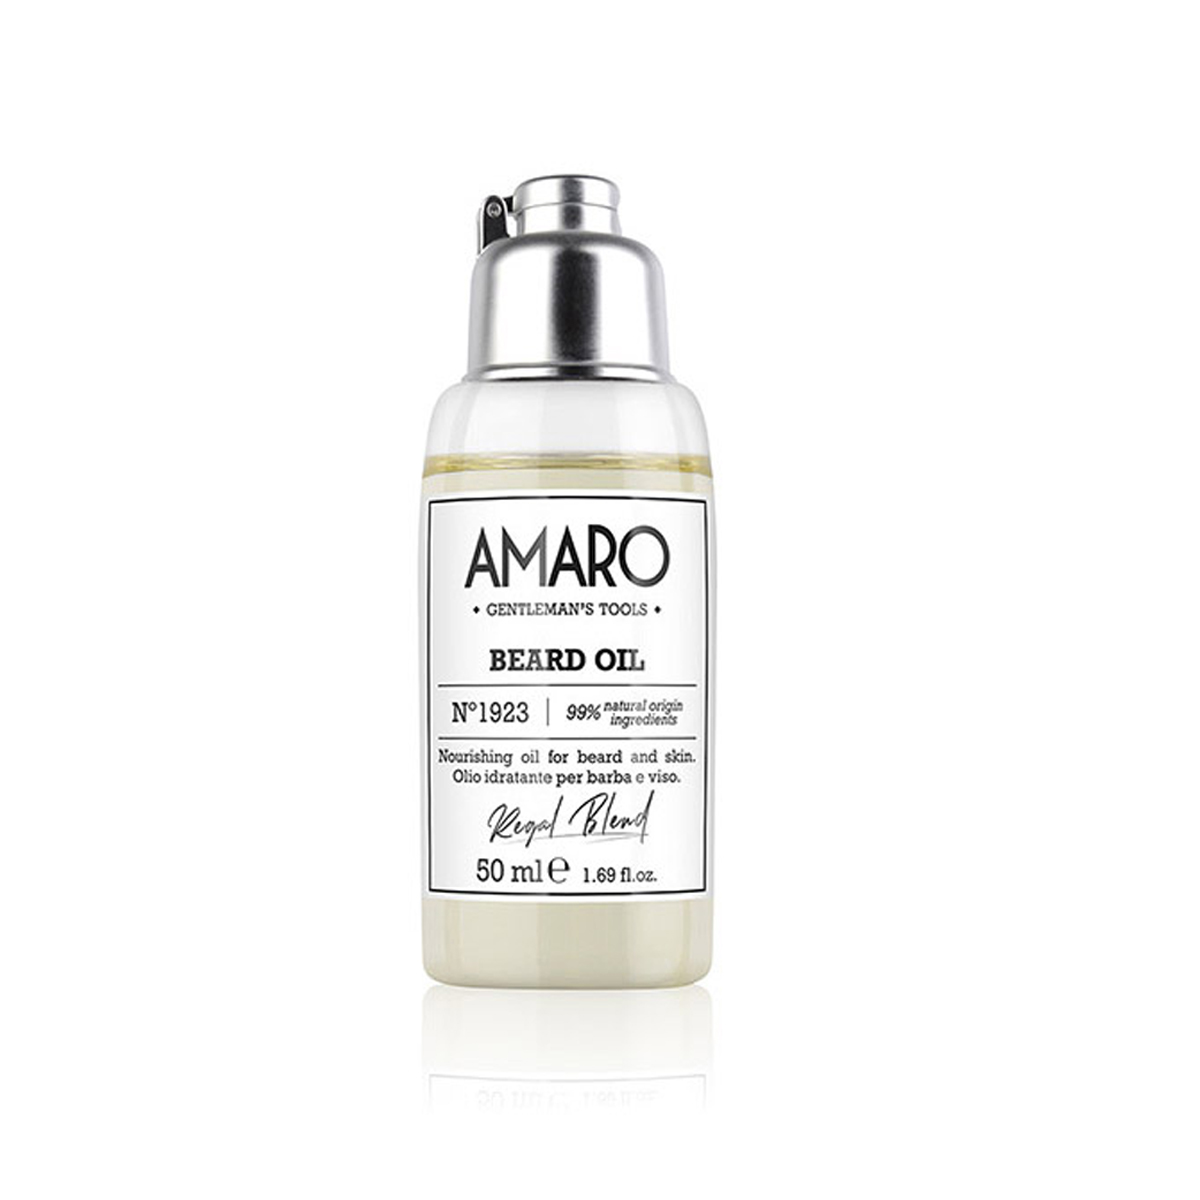 AMARO - BEARD OIL 50 ml 